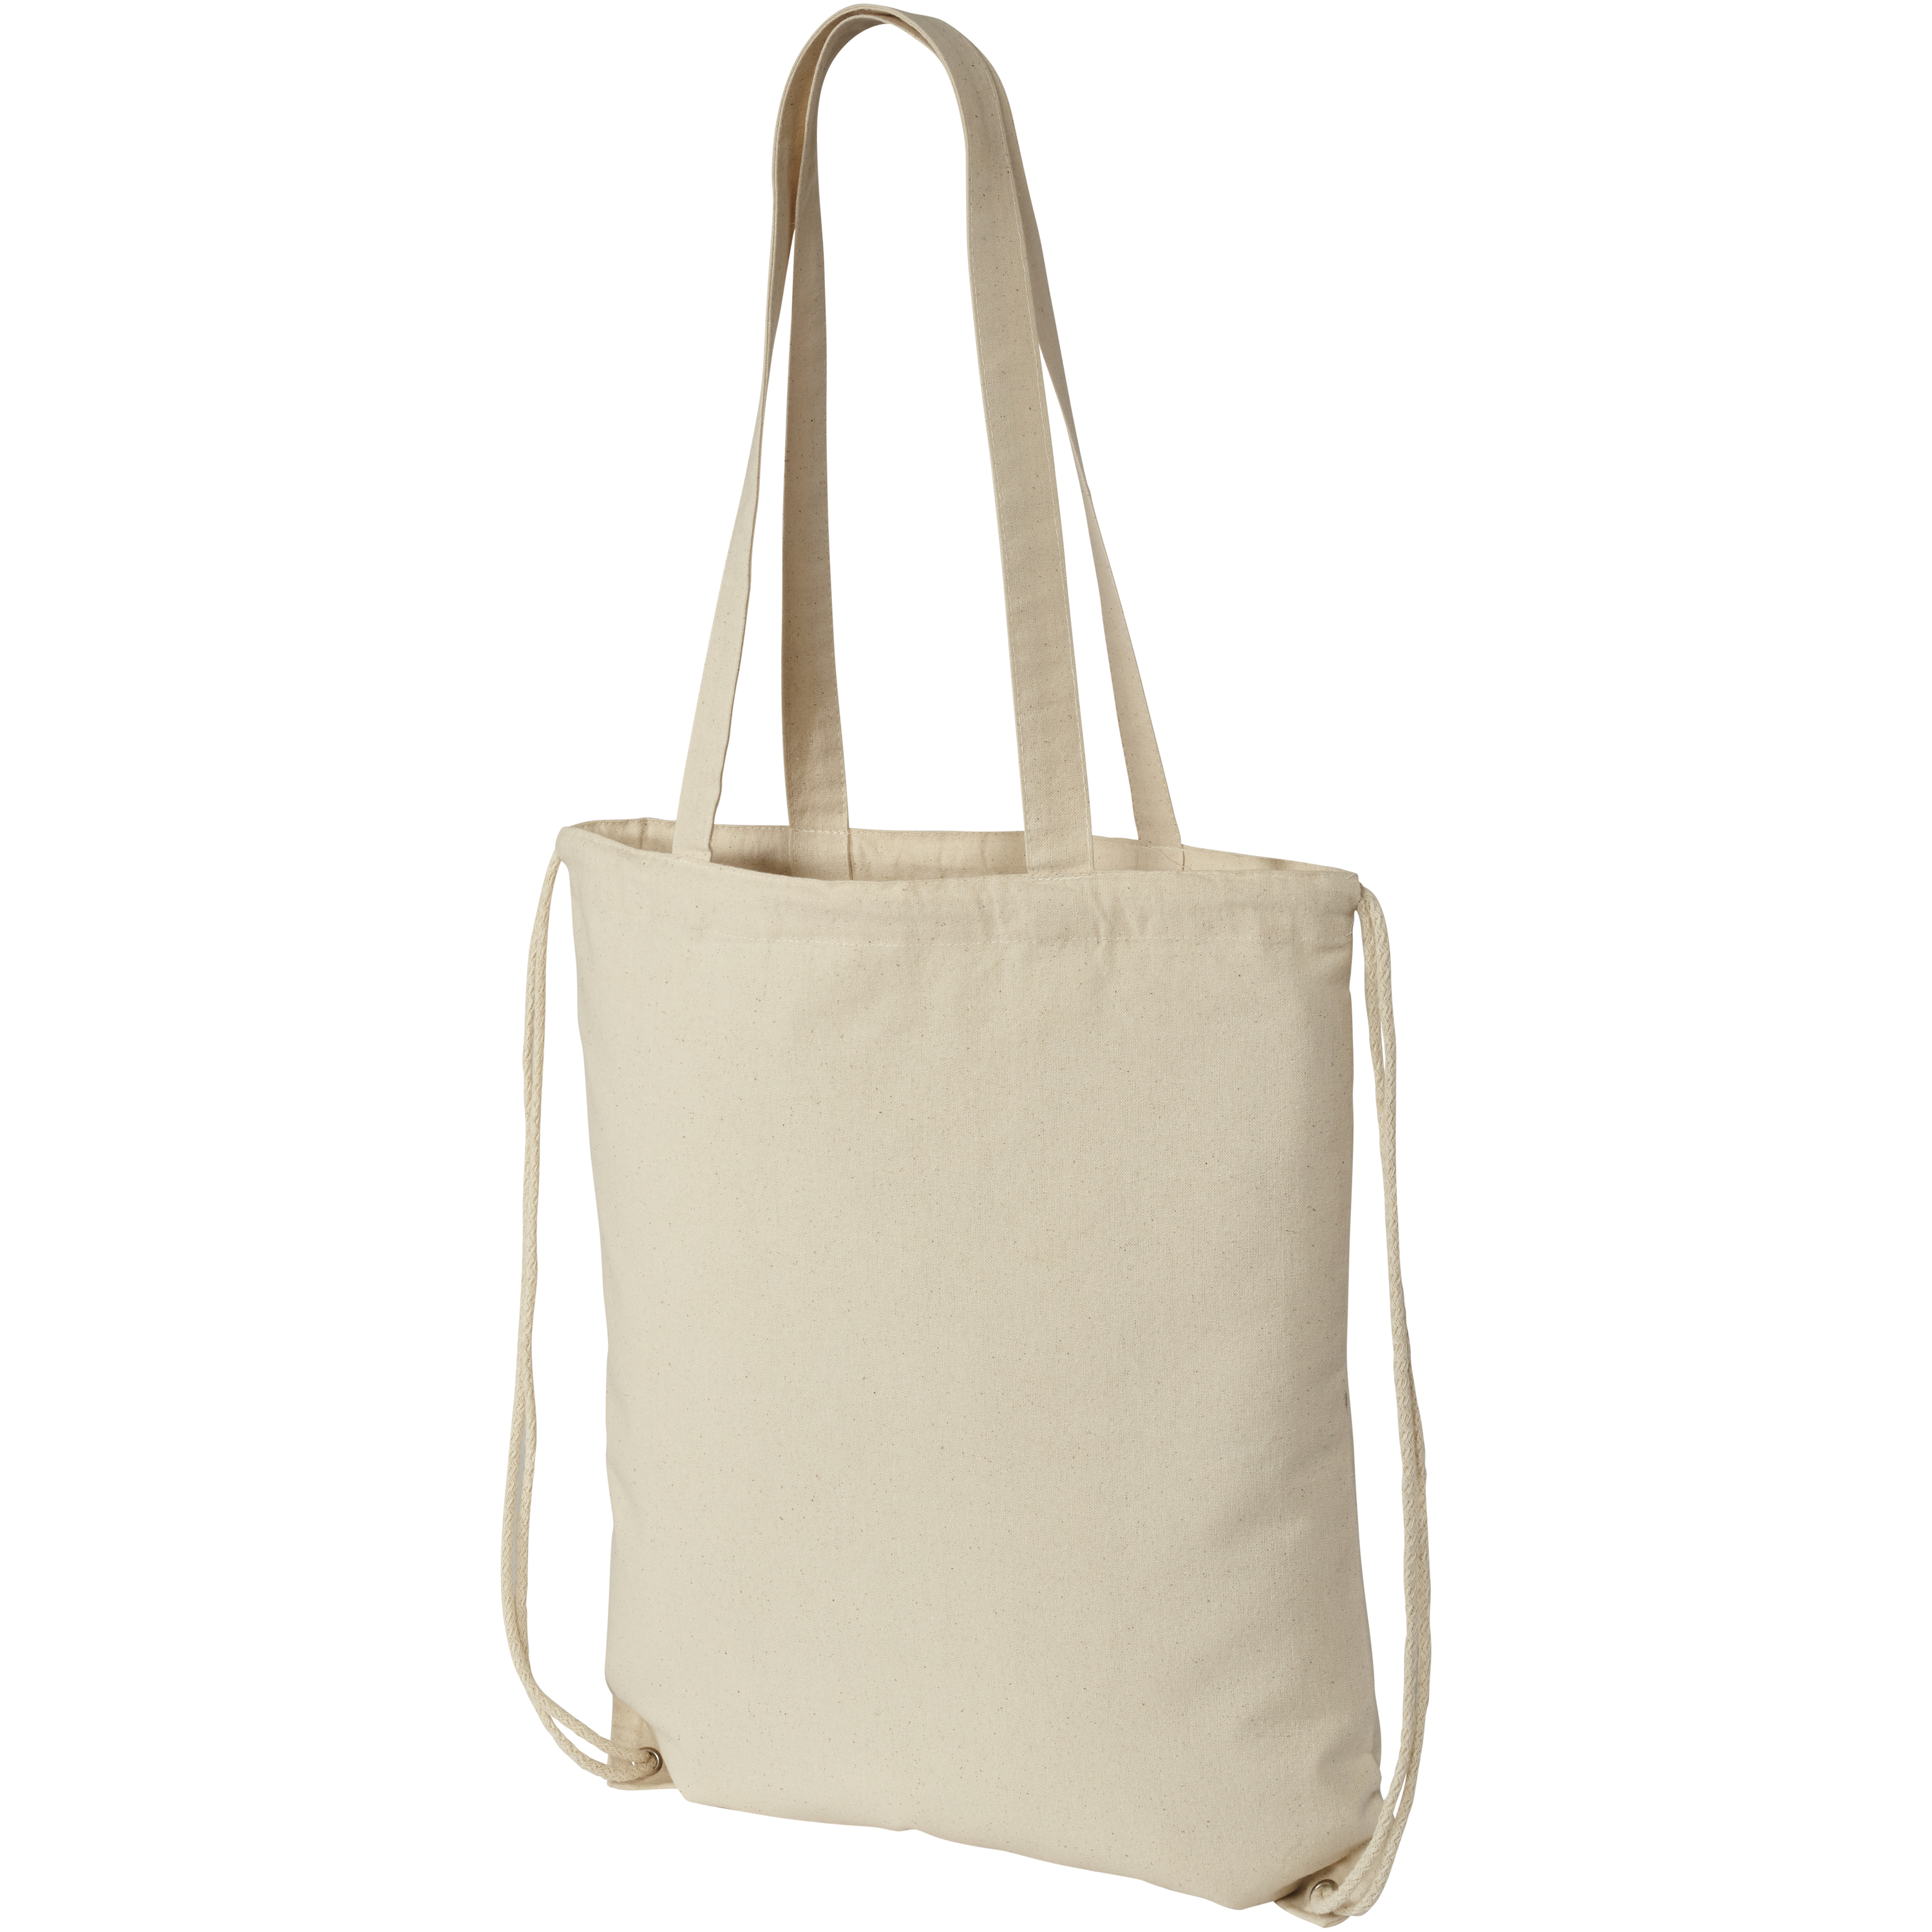 Eliza 240 g/m² cotton drawstring bag 6L